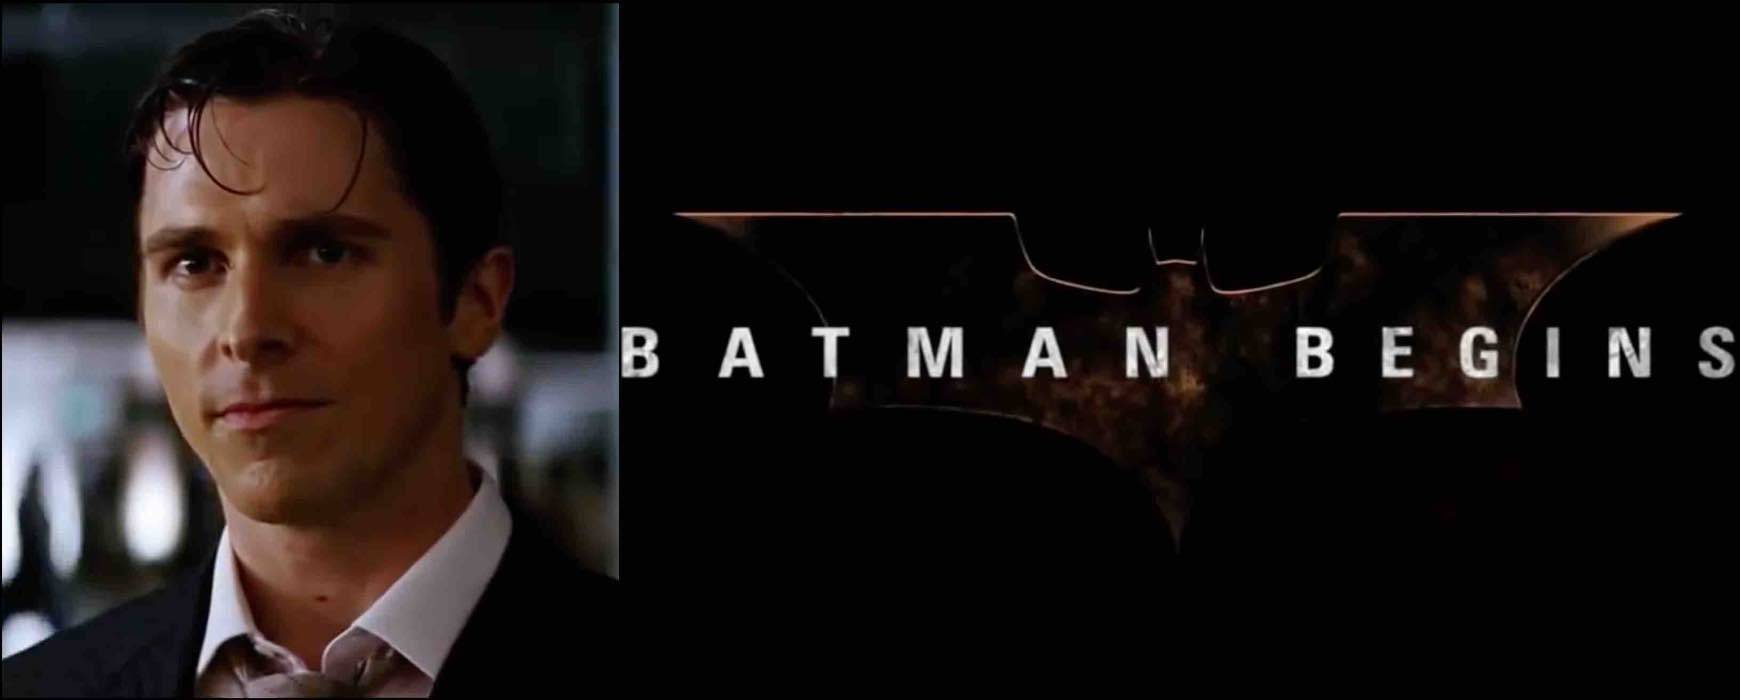 Italia 1, 'Batman Begins': trama e cast del film con Christian Bale